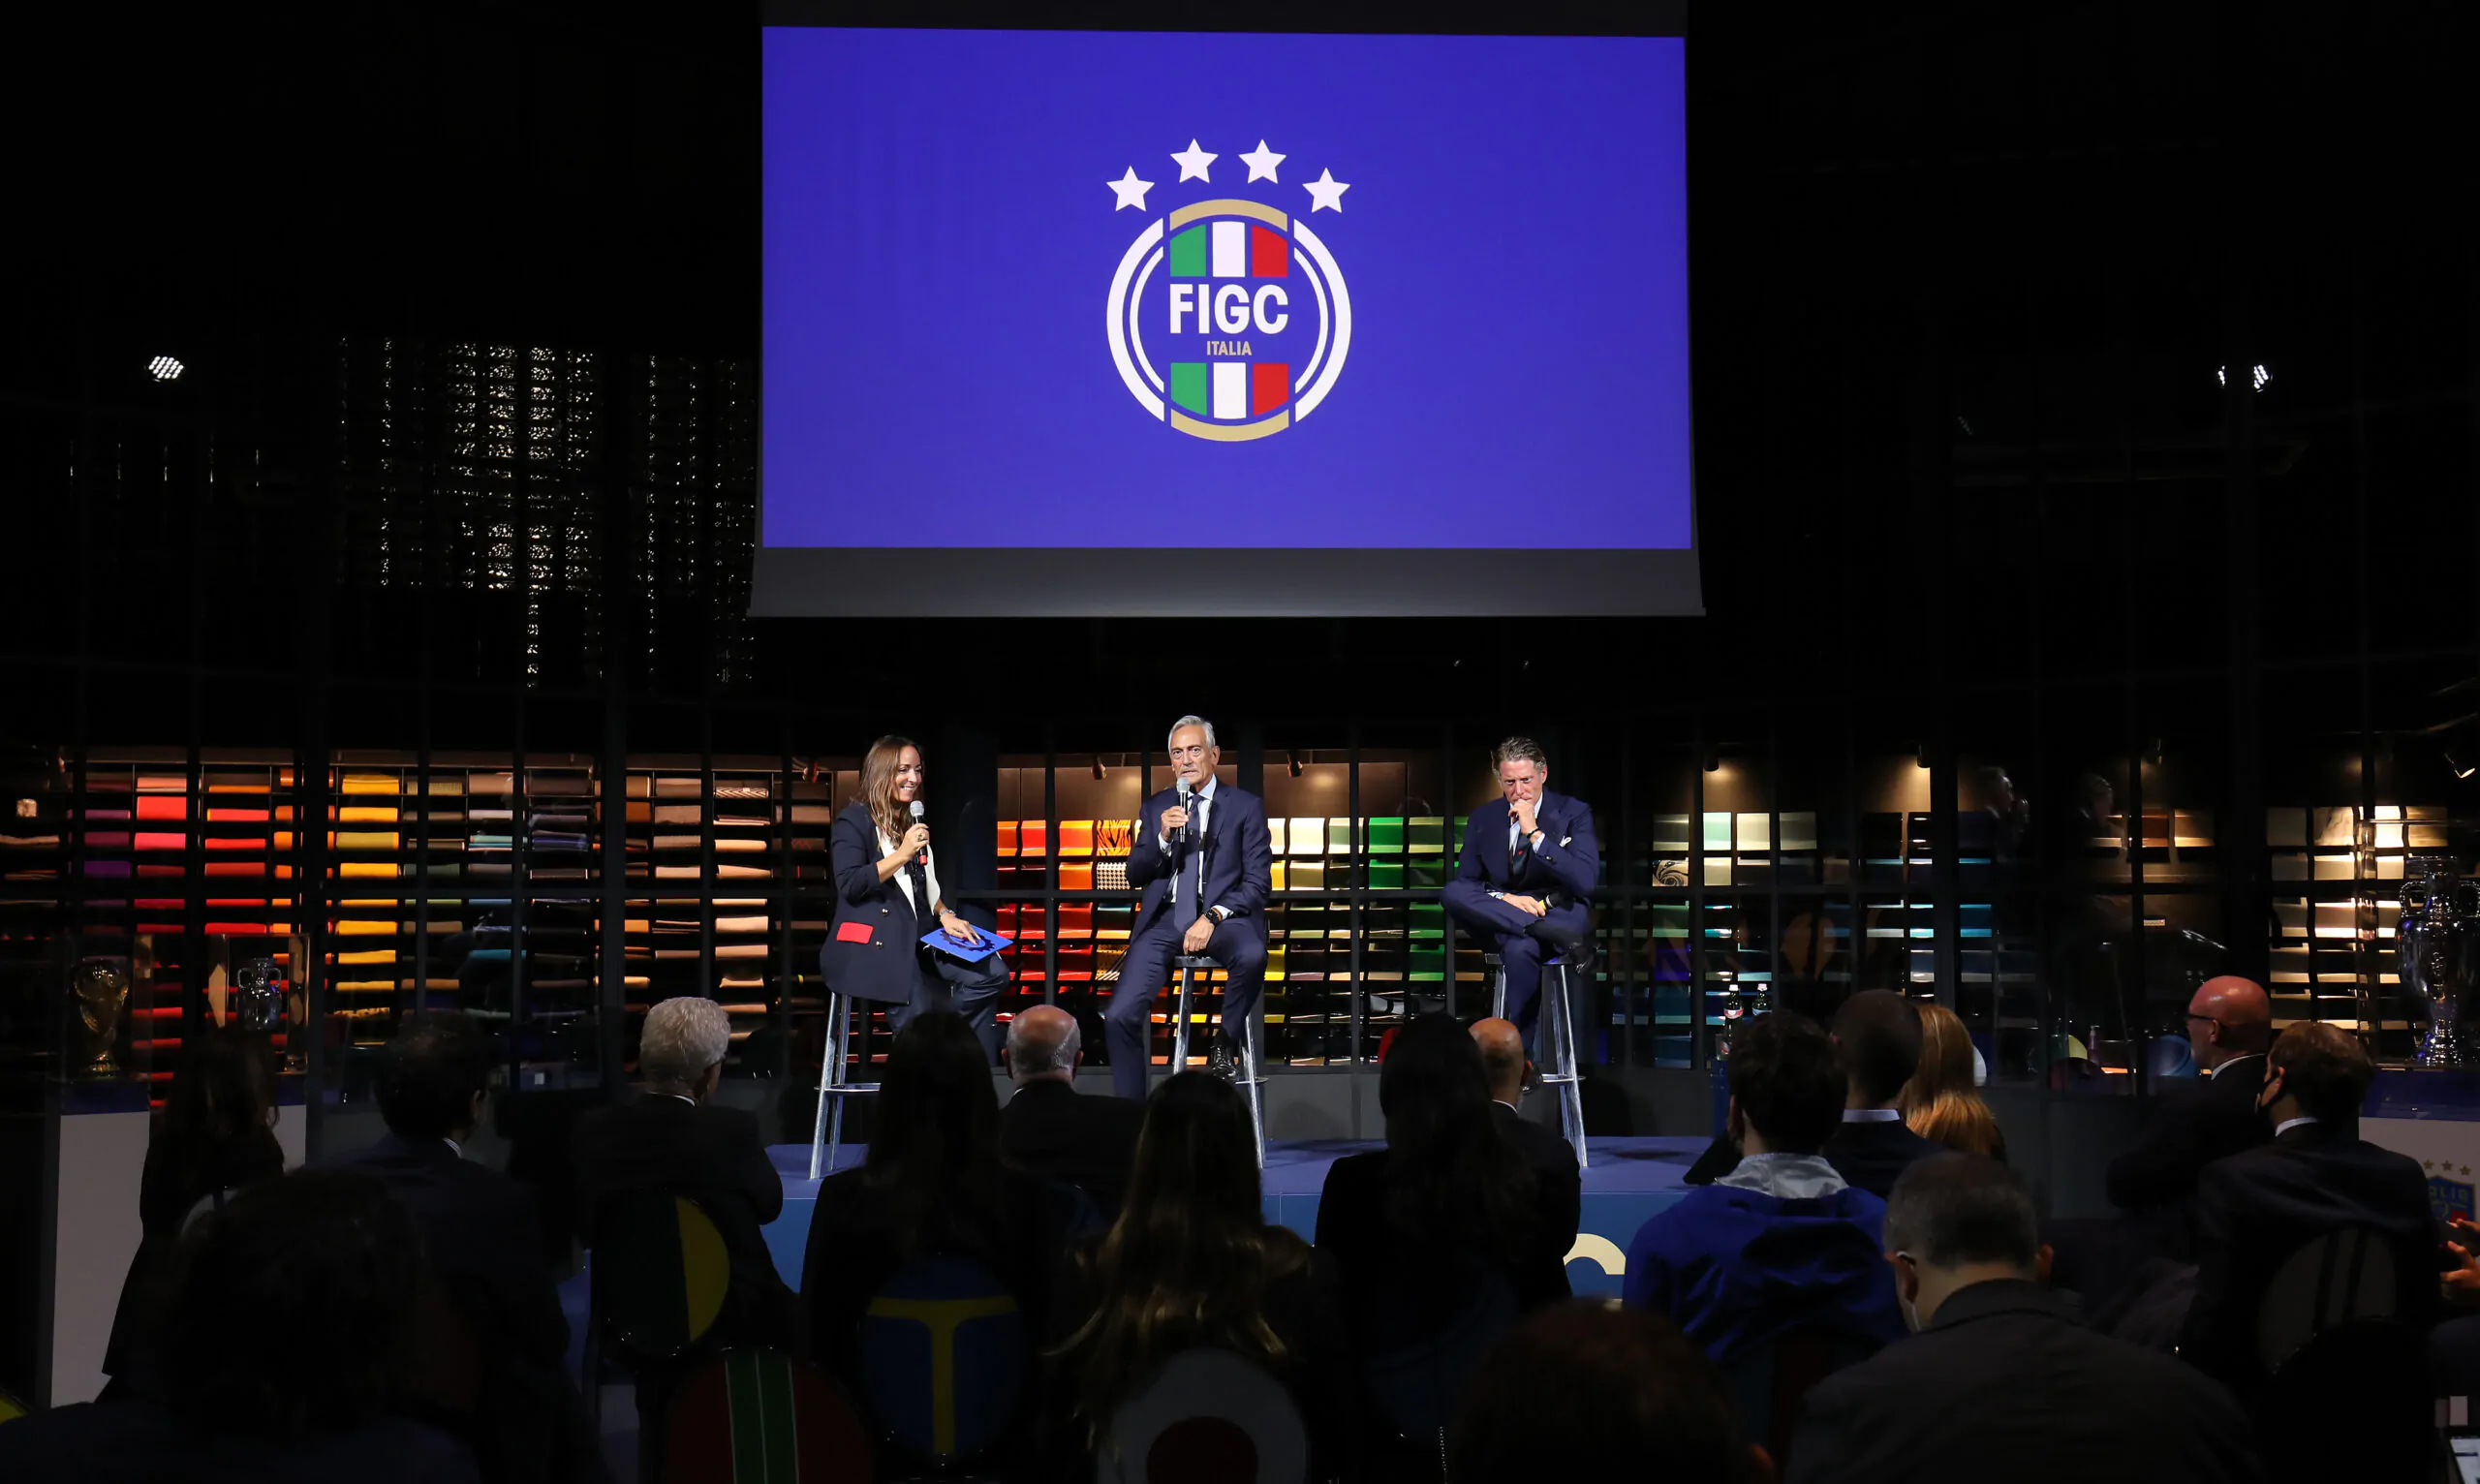 Indice di liquidità: arriva la decisione del TAR sul ricorso della FIGC